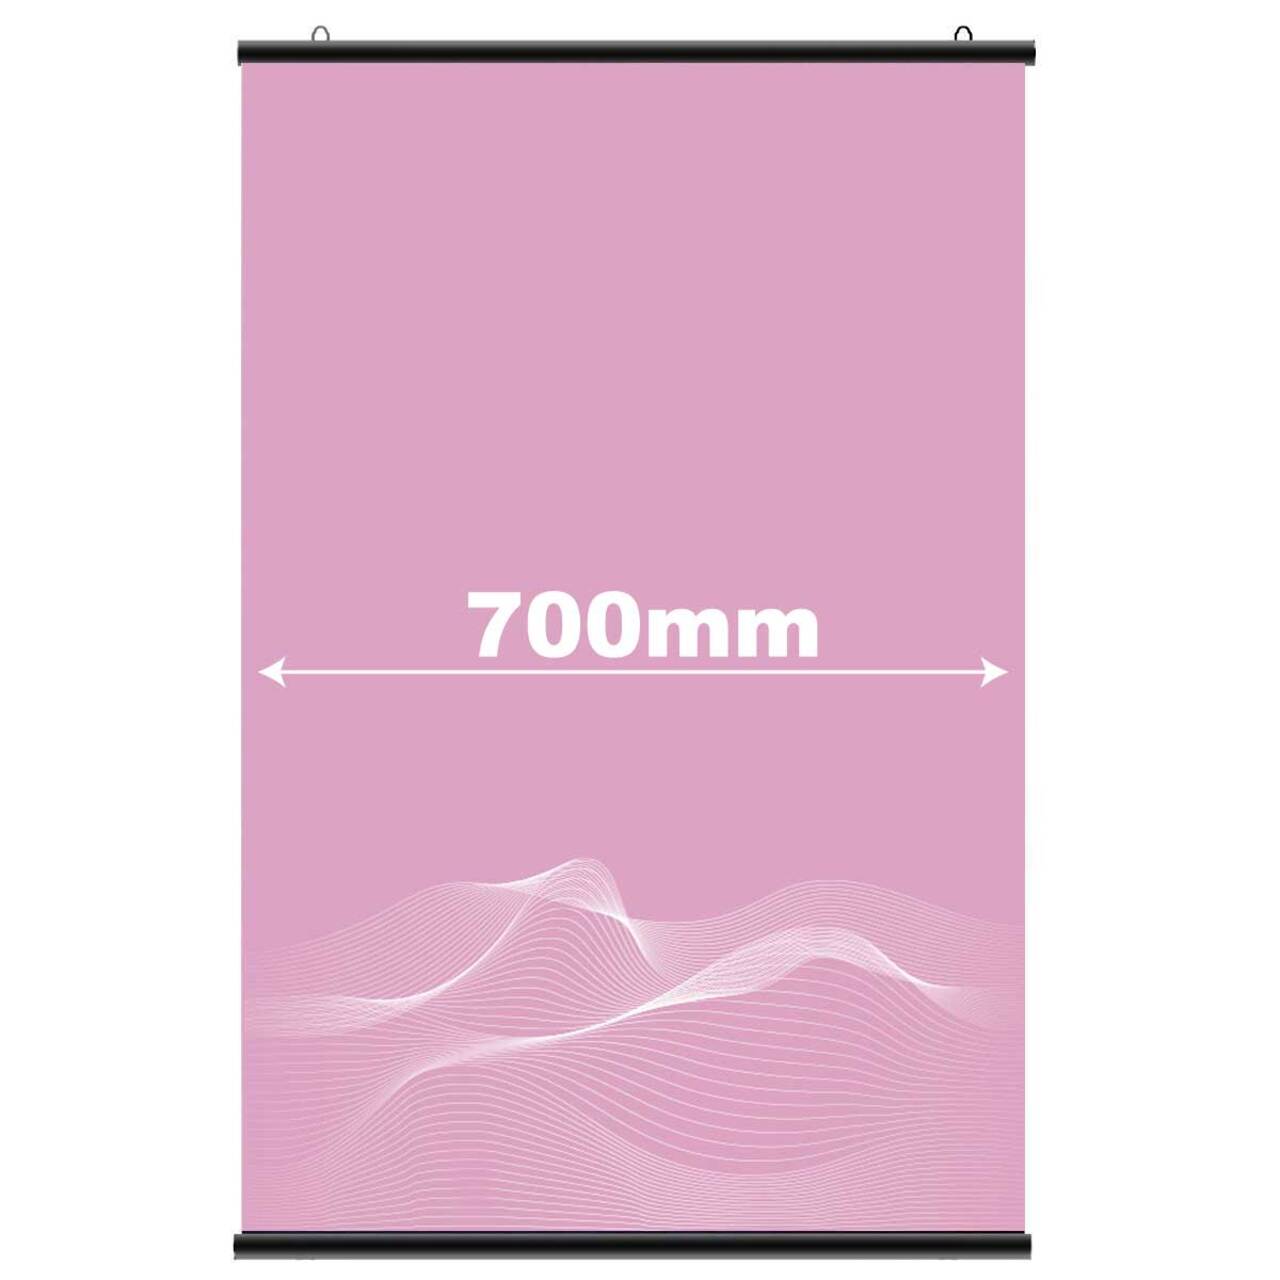 Suport poster tip hanger click NEGRU, JJ DISPLAYS, 700 mm